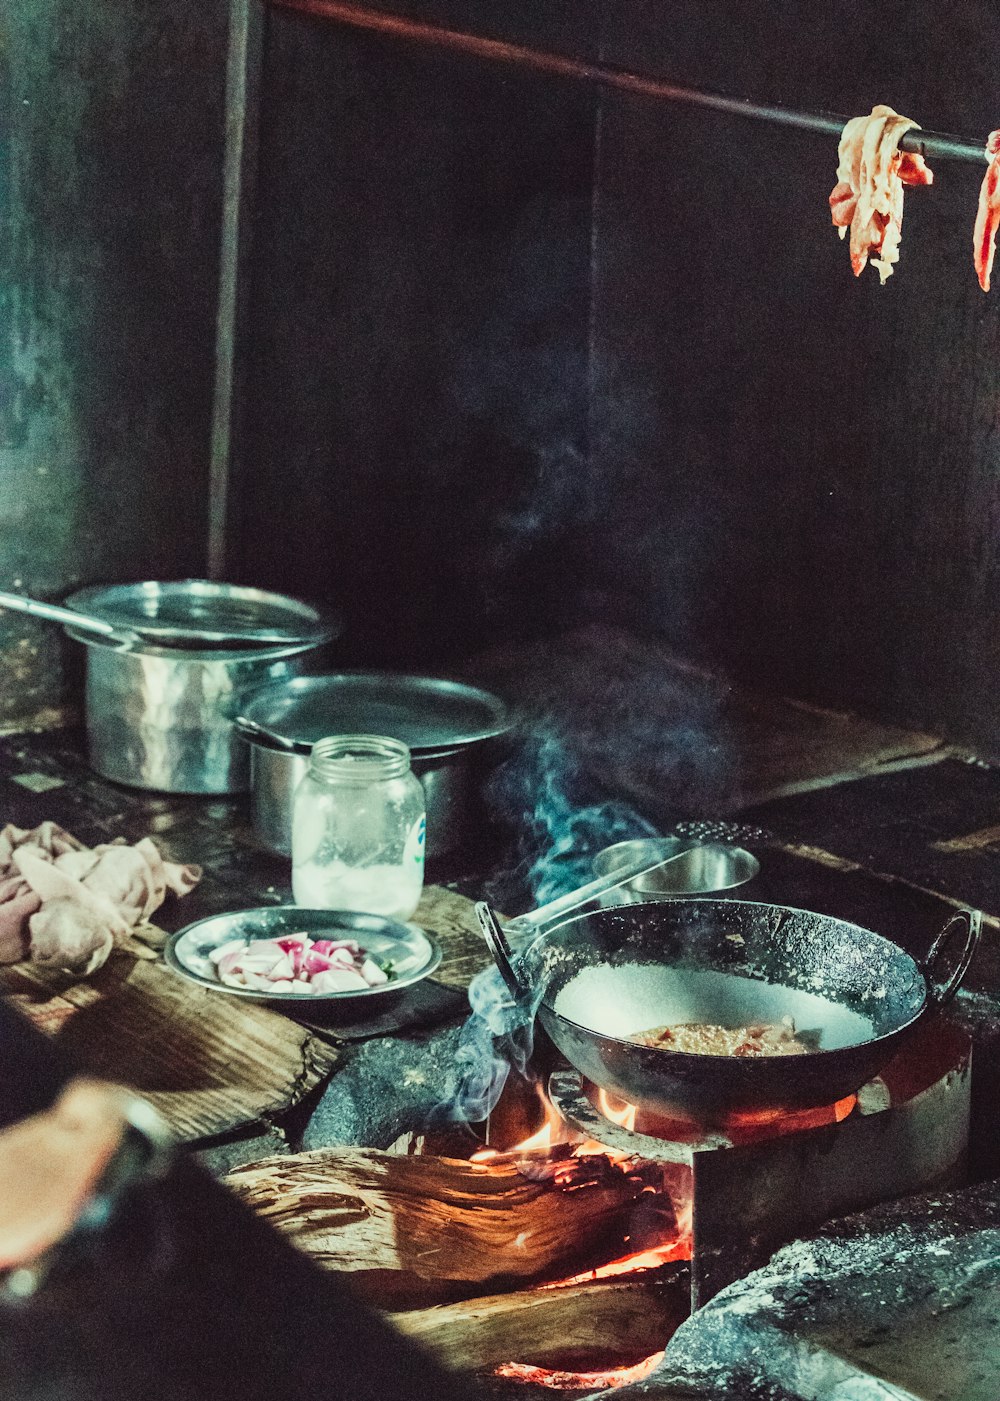 une personne cuisant des aliments sur une cuisinière dans une cuisine